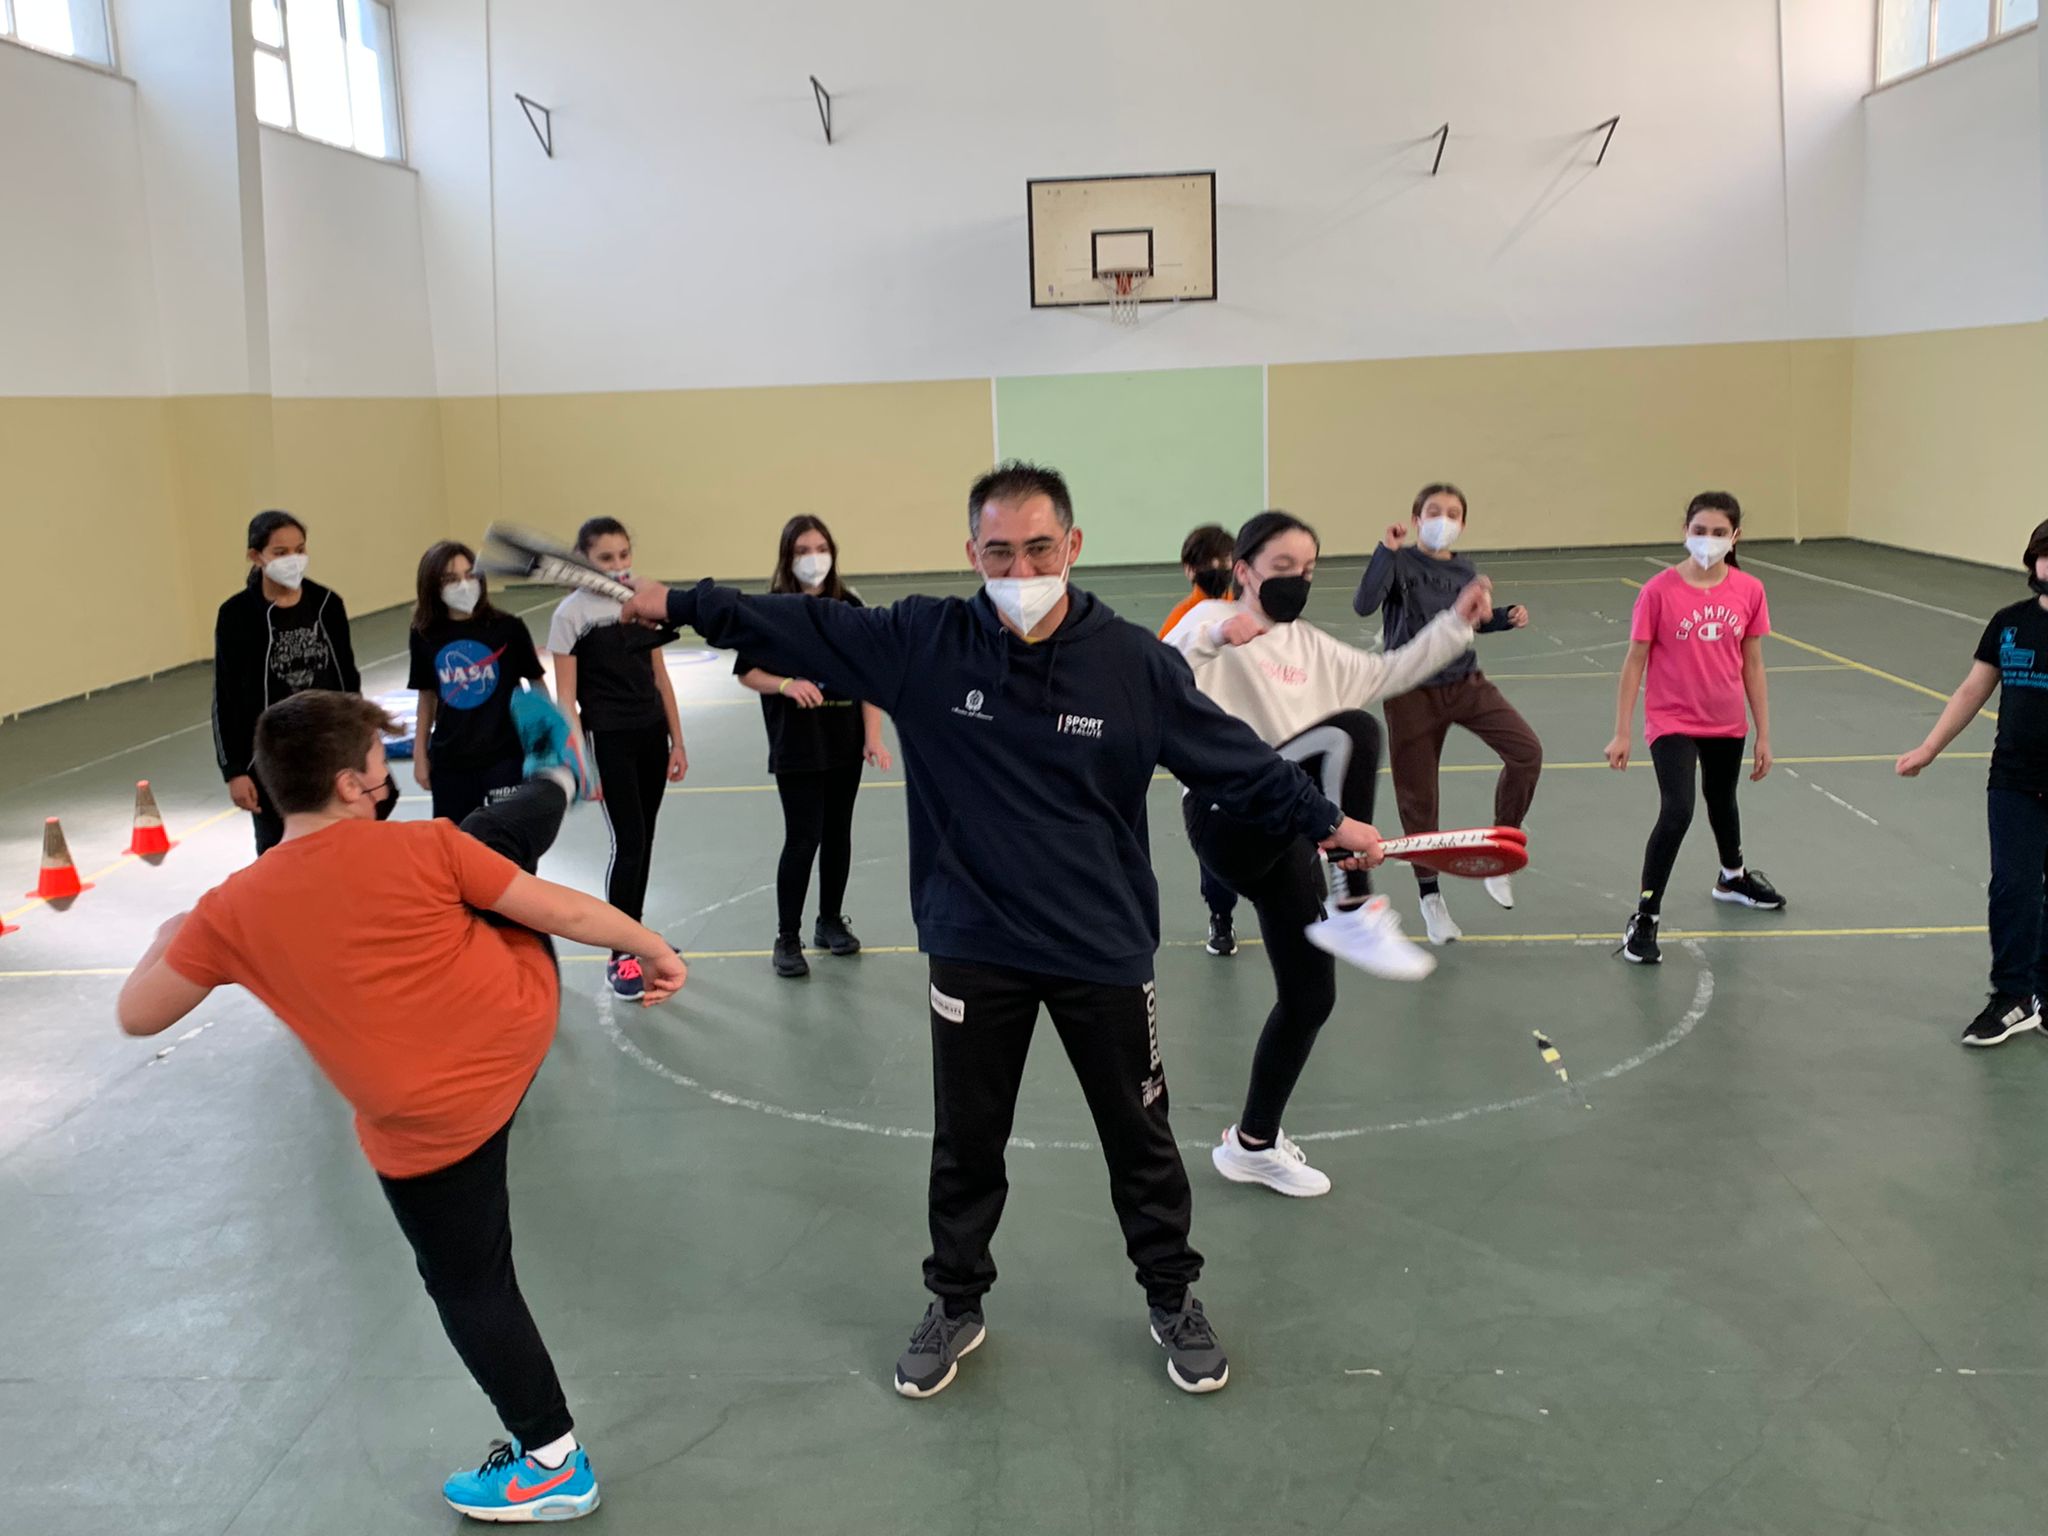 Progetto Scuola Attiva Junior, istituto Minozzi-Festa di Matera: introduzione alla pratica sportiva del taekwondo con il tecnico federale Diego Valente